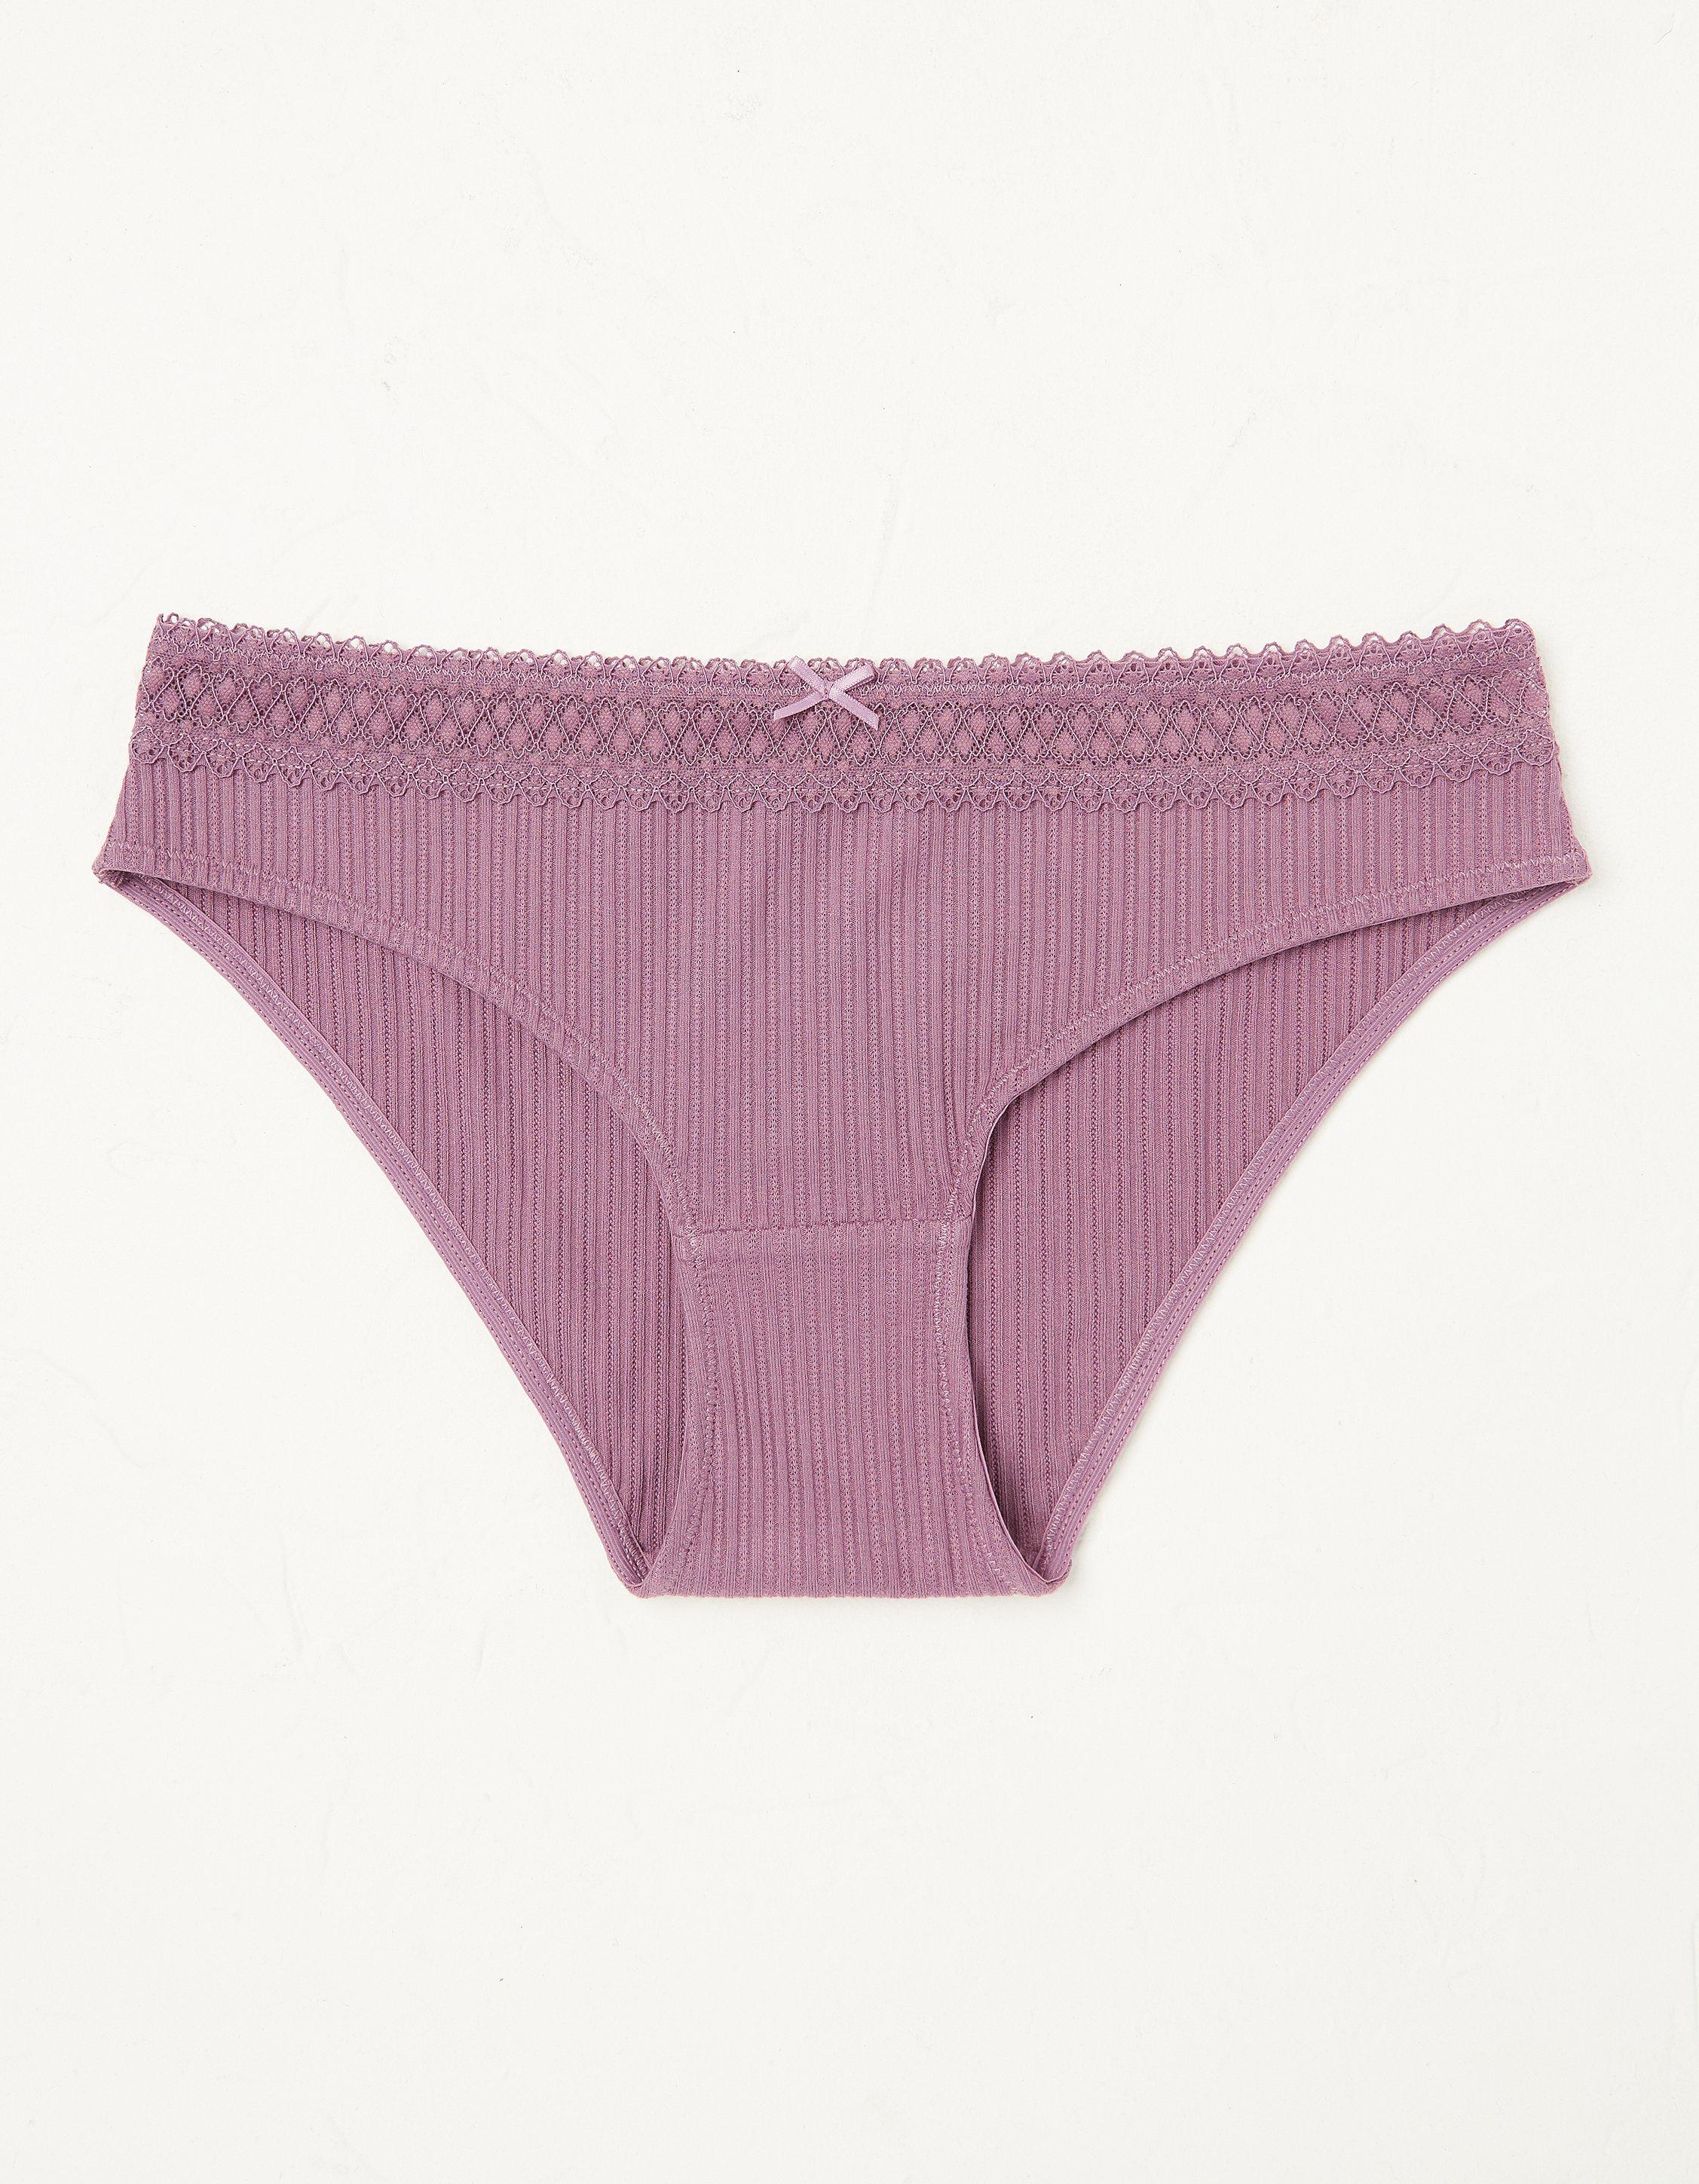 Mini-brief Lace - Women Underwear